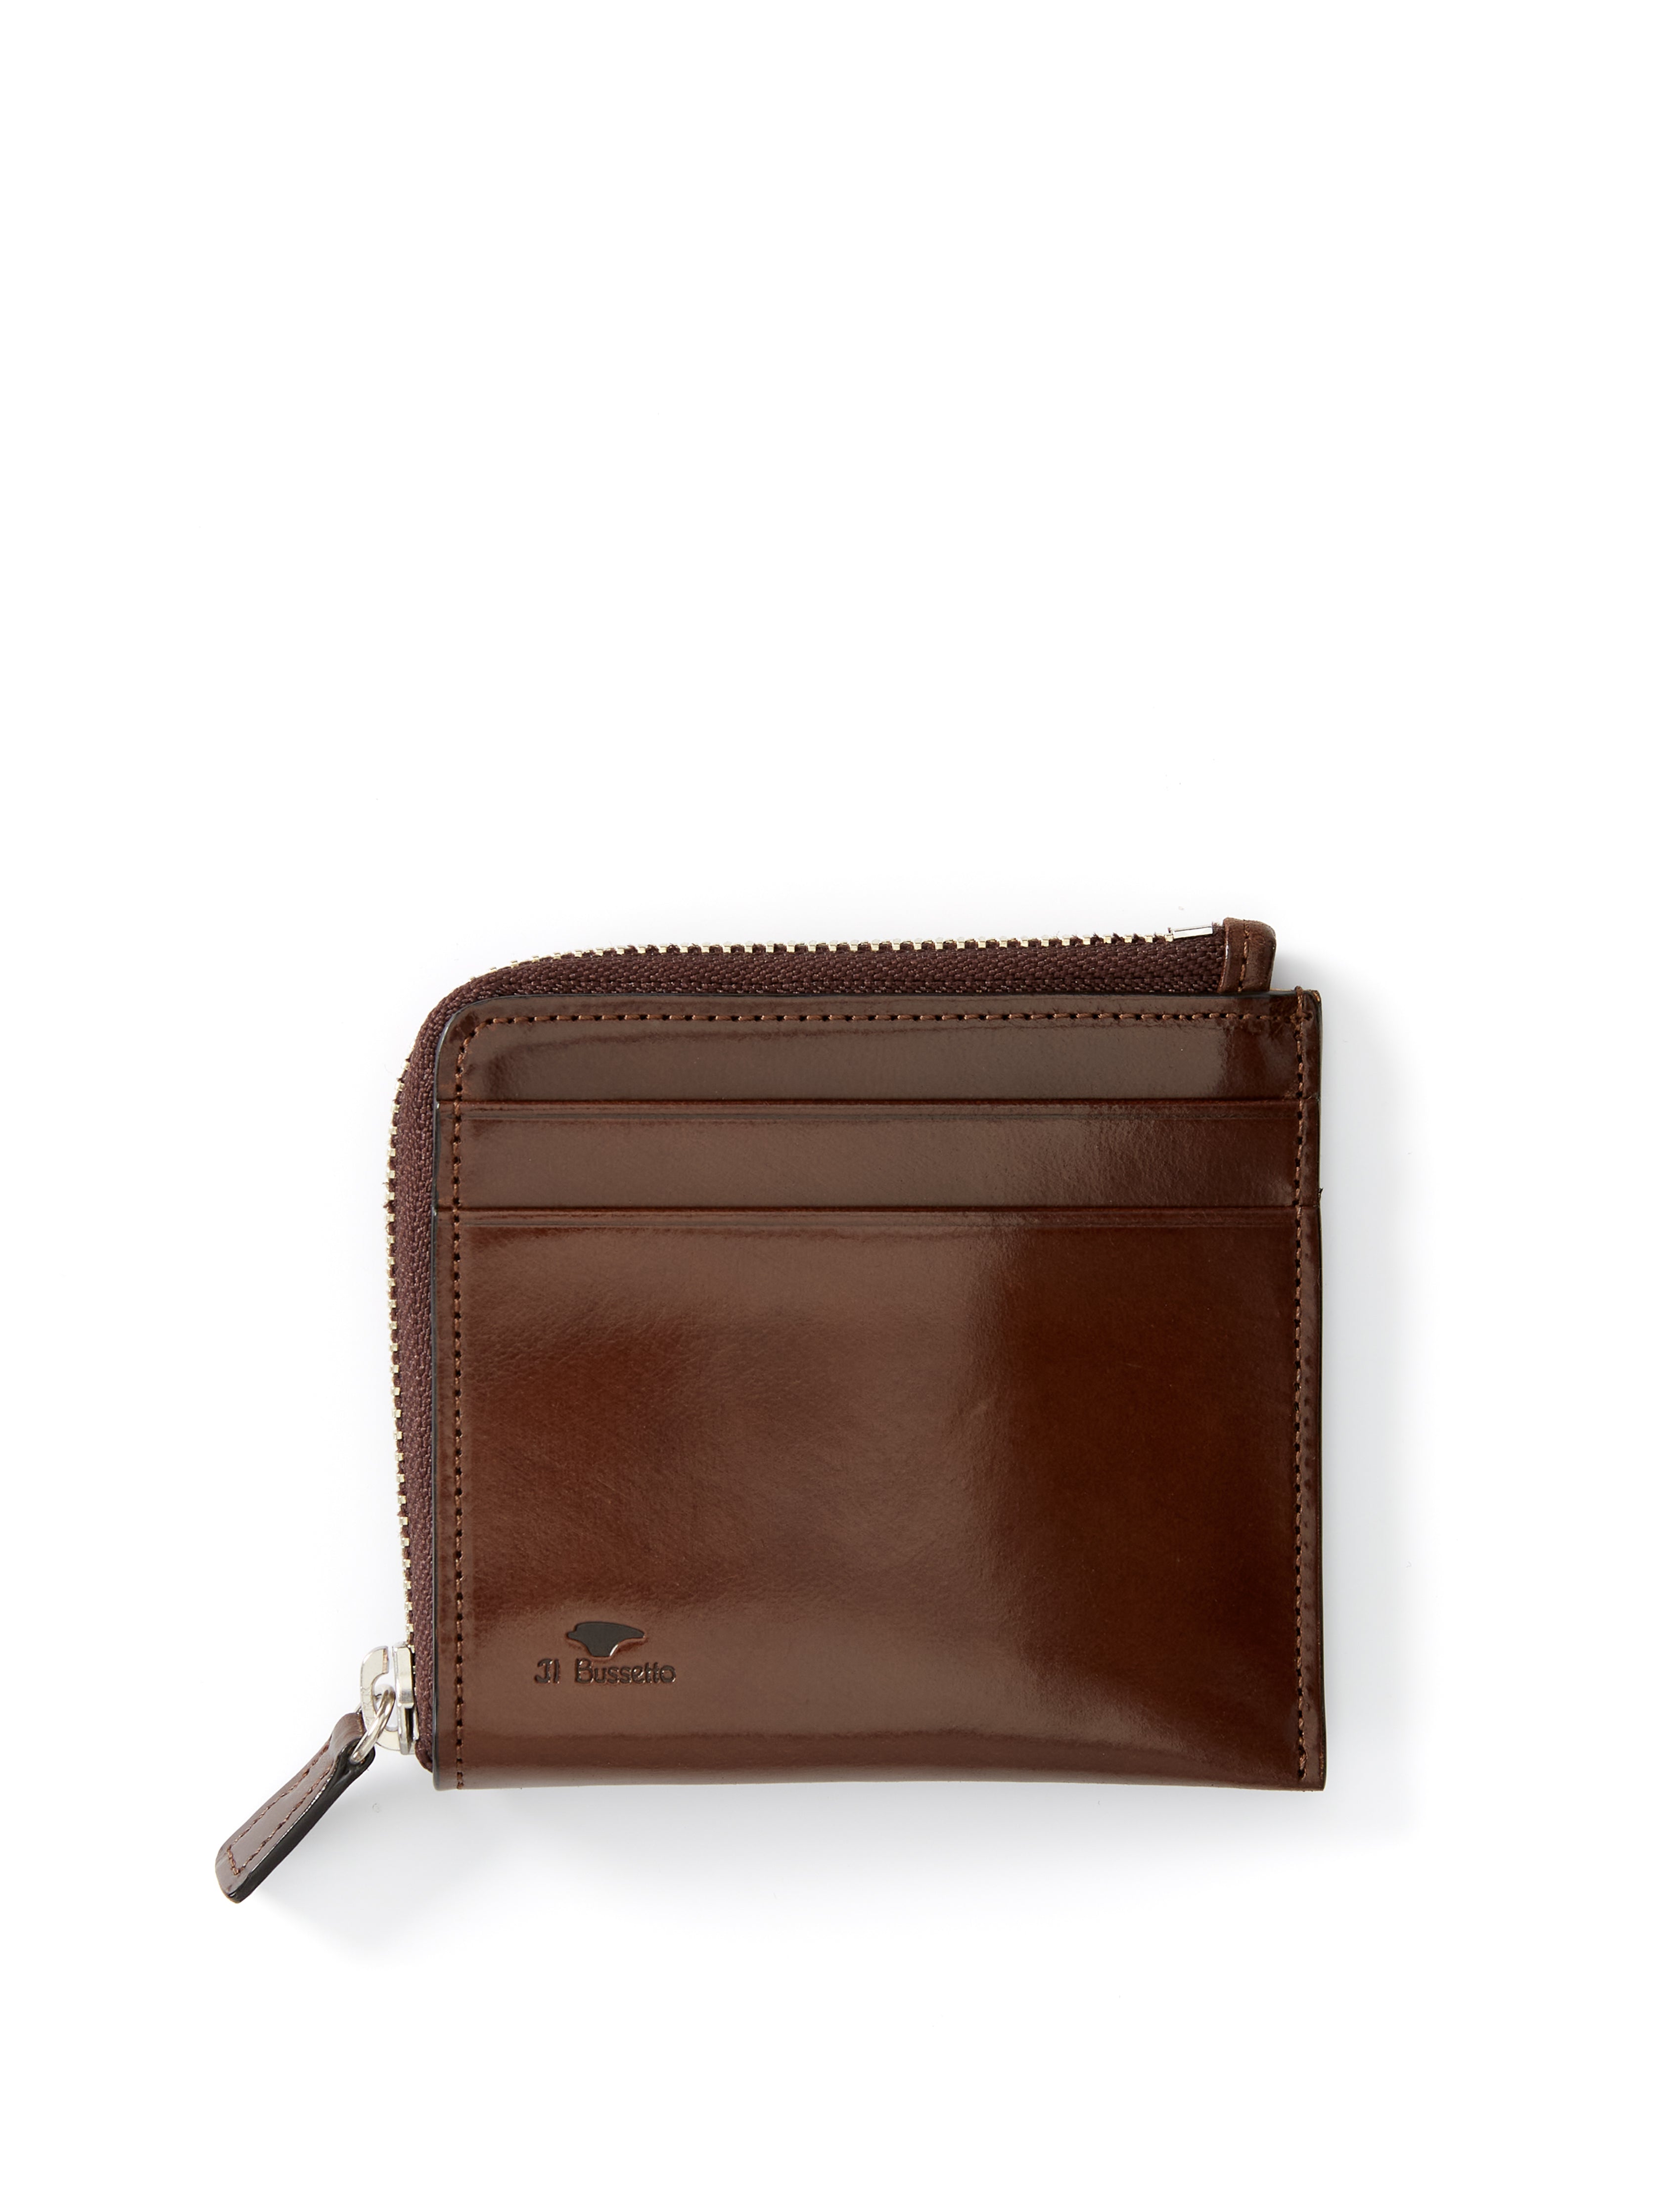 Il Bussetto Corner Zip Wallet Dark Brown Leather